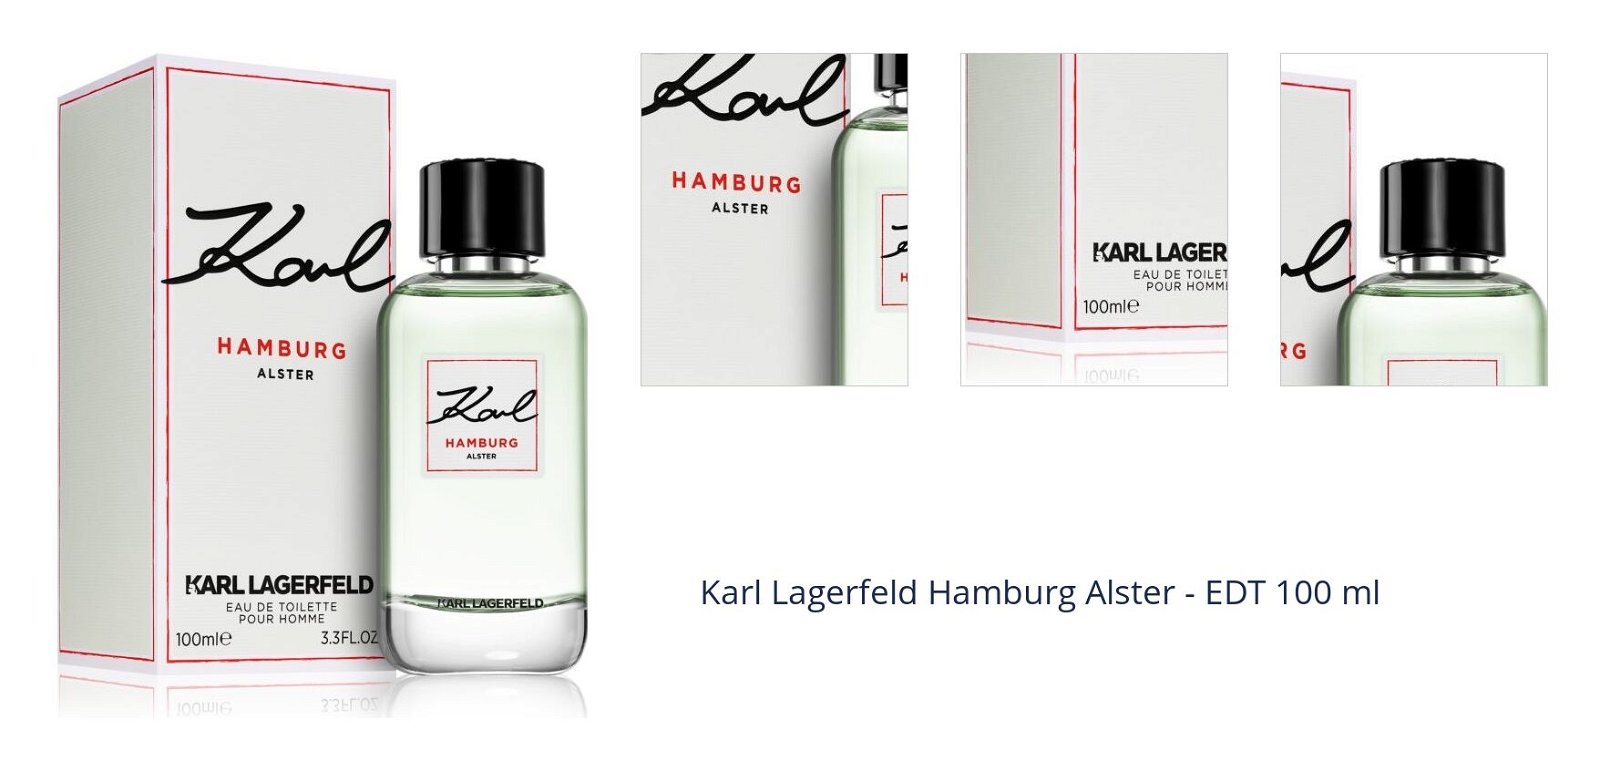 Karl Lagerfeld Hamburg Alster - EDT 100 ml 1